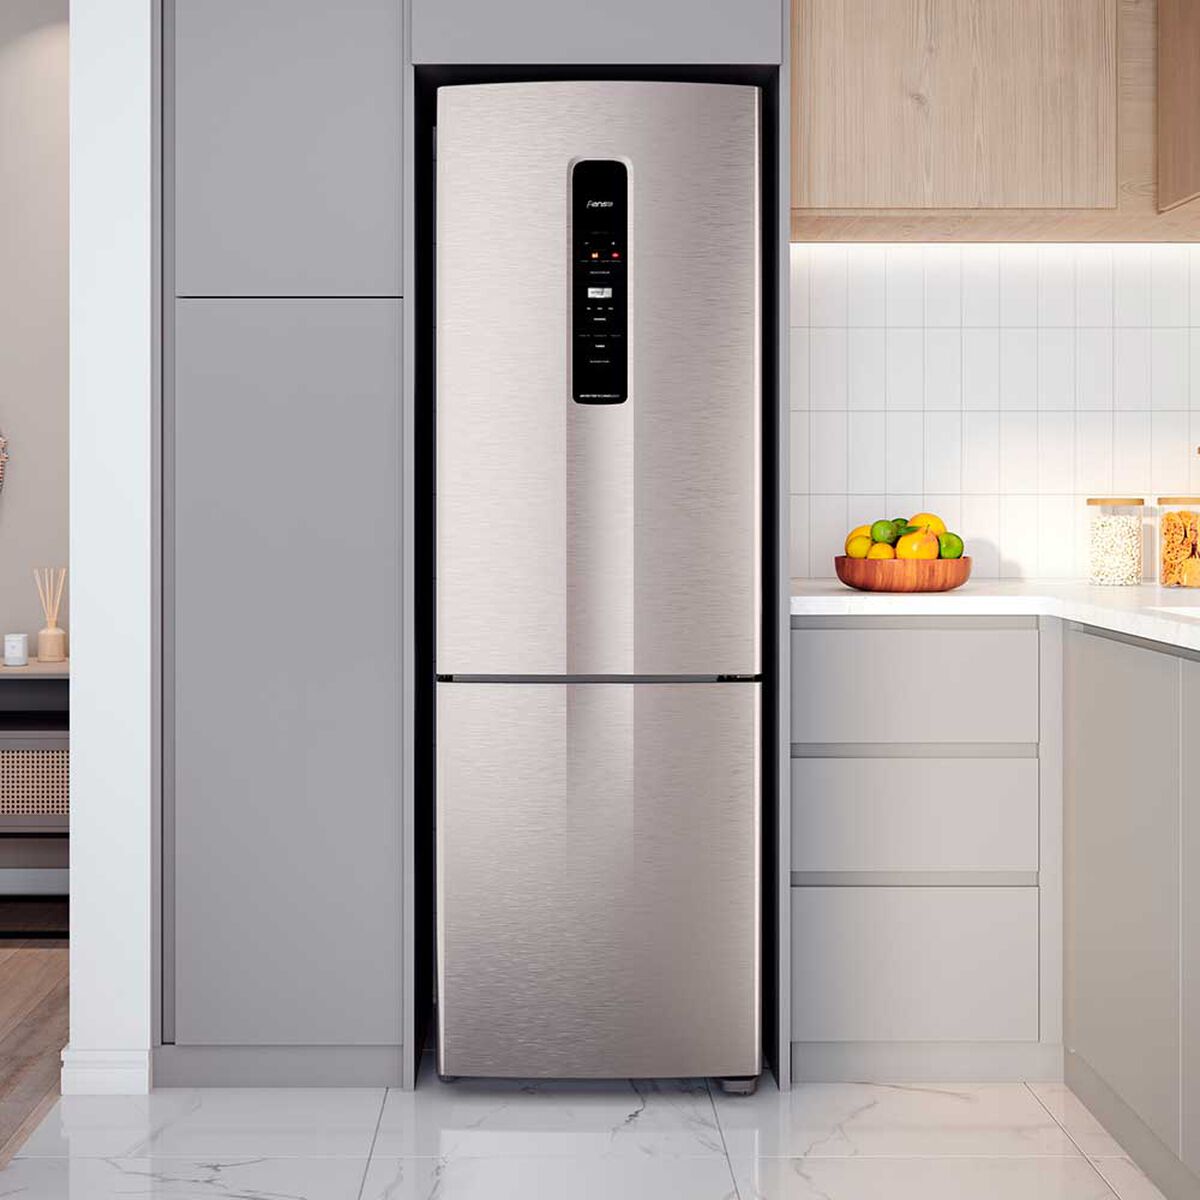 Refrigerador No Frost Fensa IB45S 400 lts